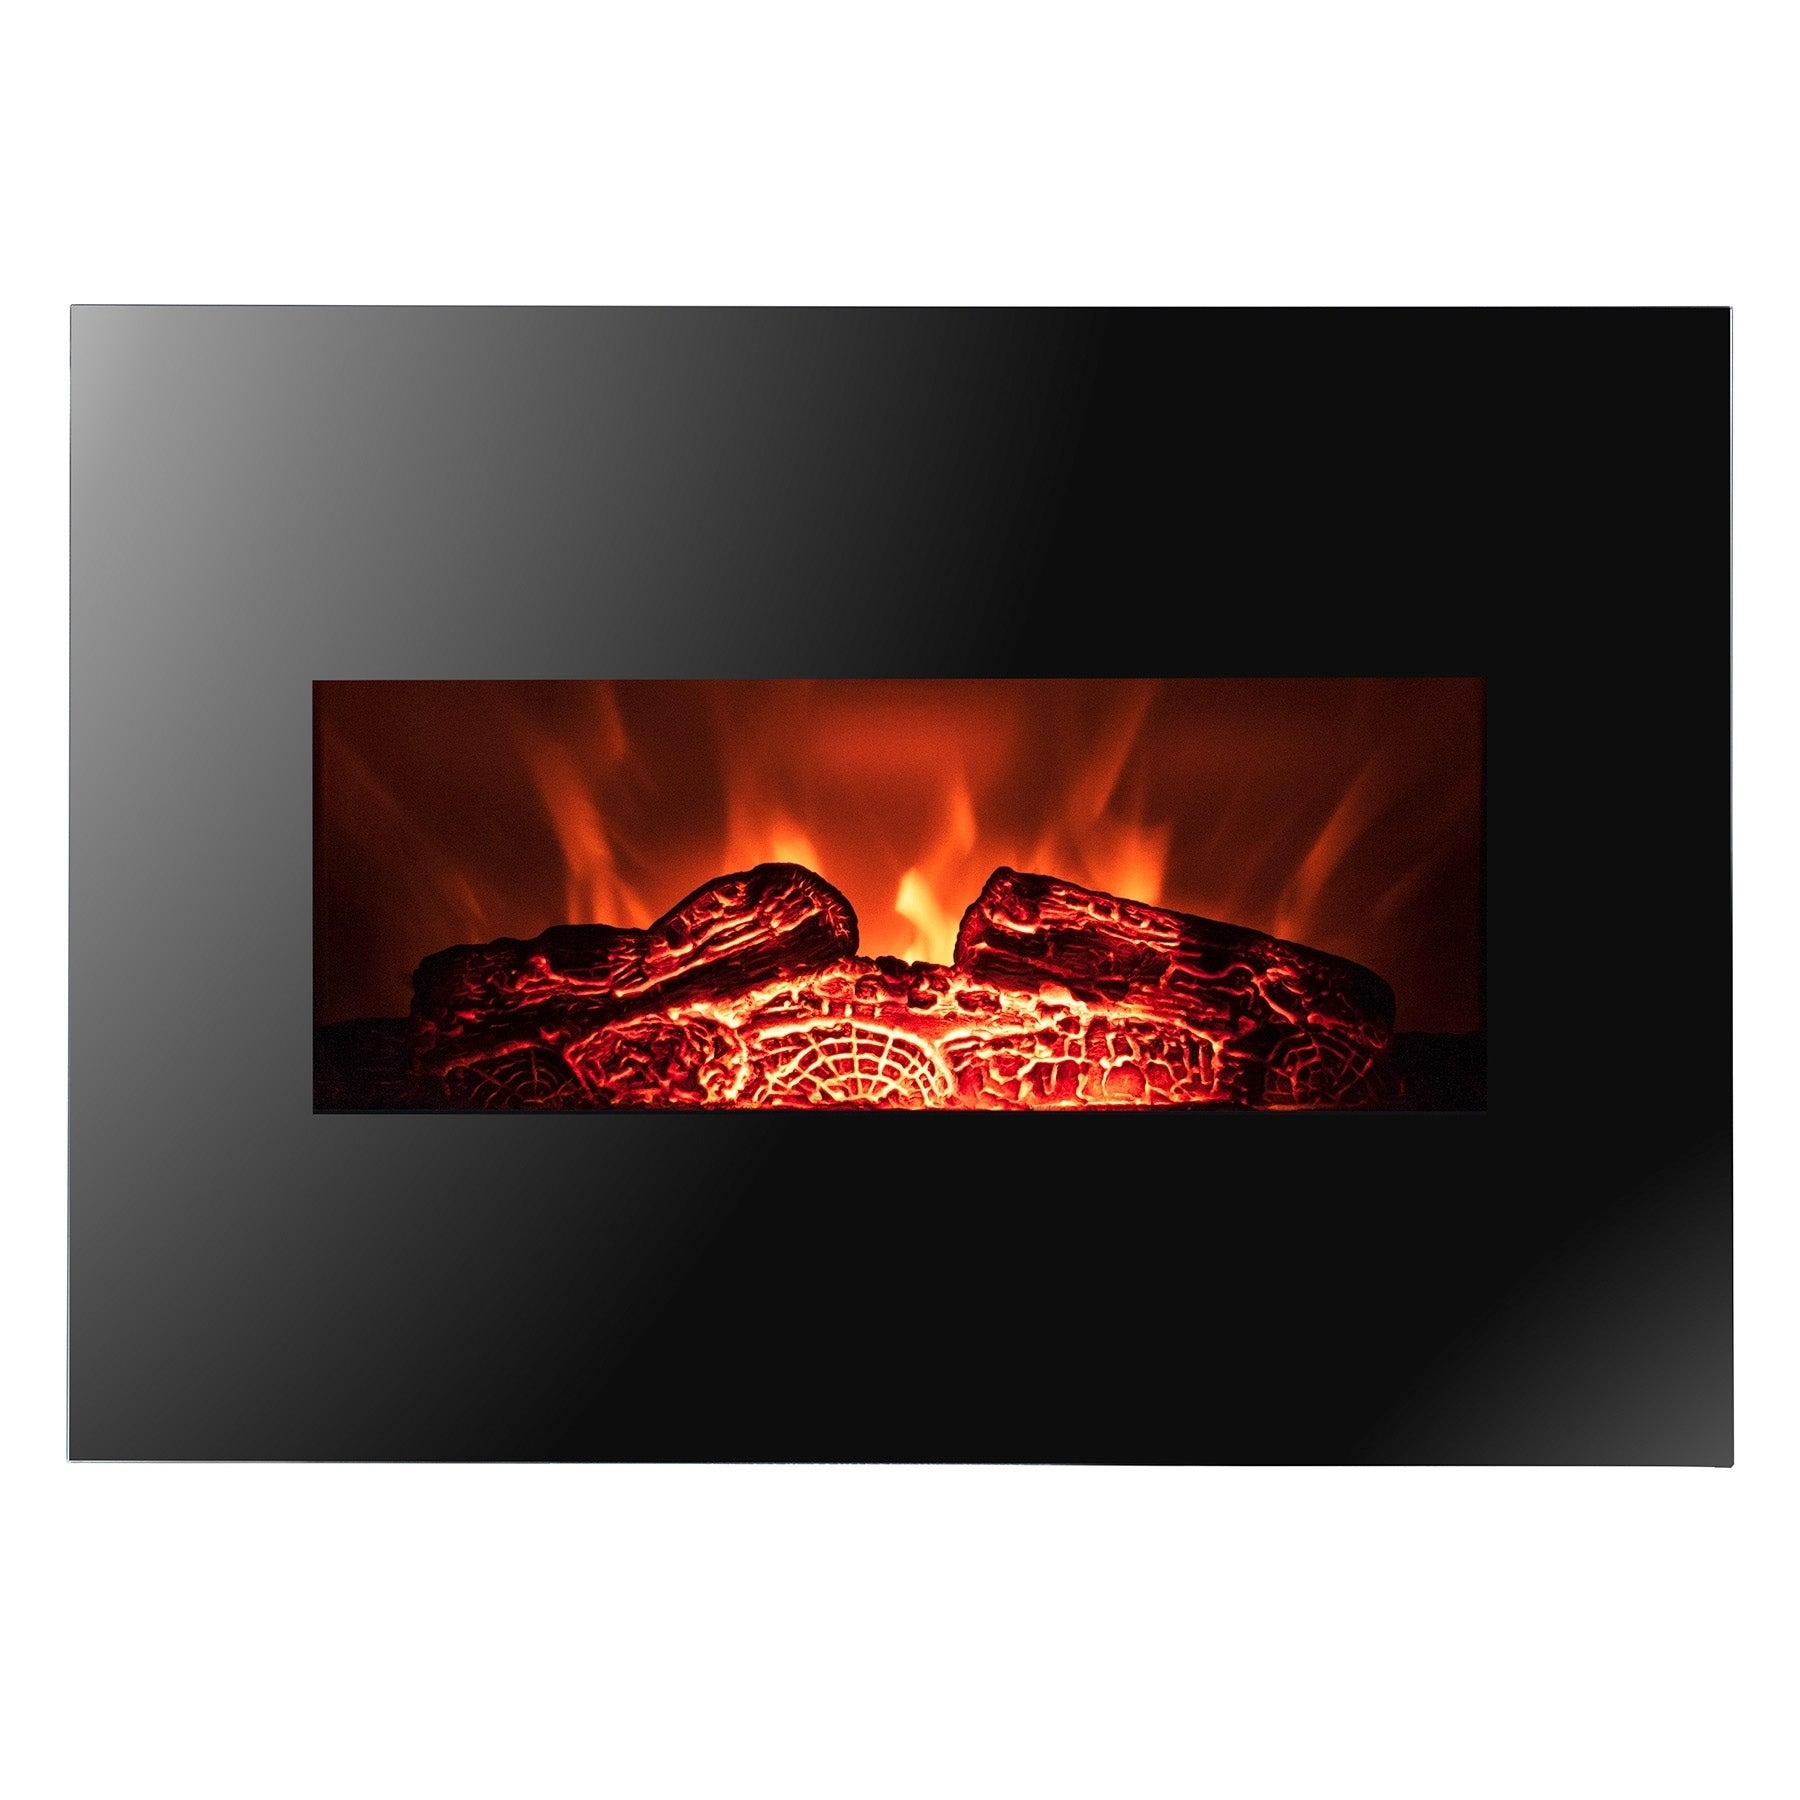 Golden Vantage FP0063 26 Wall Mount Electric Fireplace 3D Flames Firebox w Logs Heater 9ed46f7f 044b 450b 8910 d20a